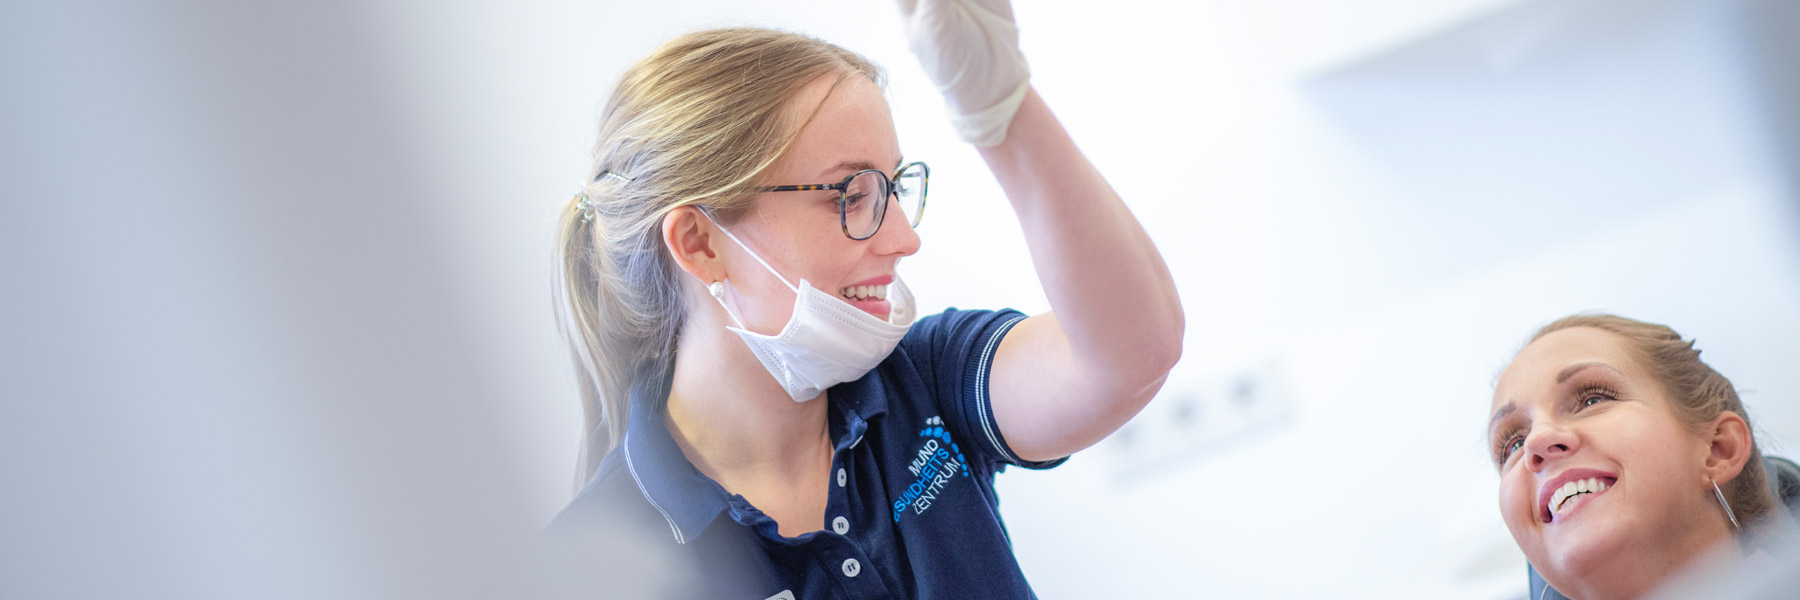 Dortmund: Von Prophylaxe über Zahnimplantate bis Zahnersatz